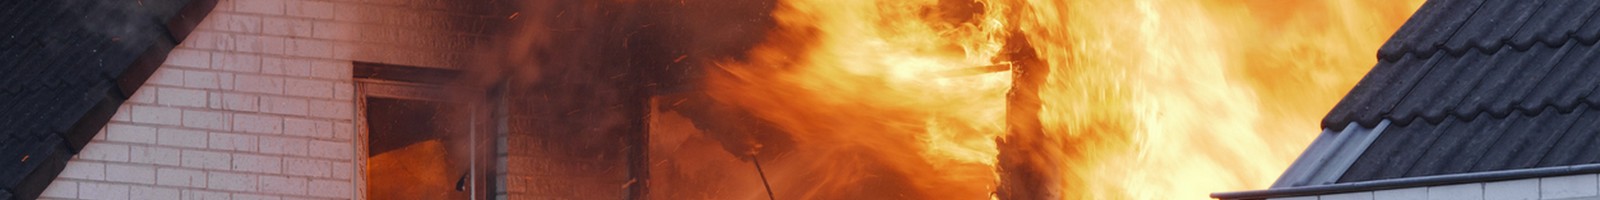 L’incendie à Crots (Hautes-Alpes) fait des ravages considérables